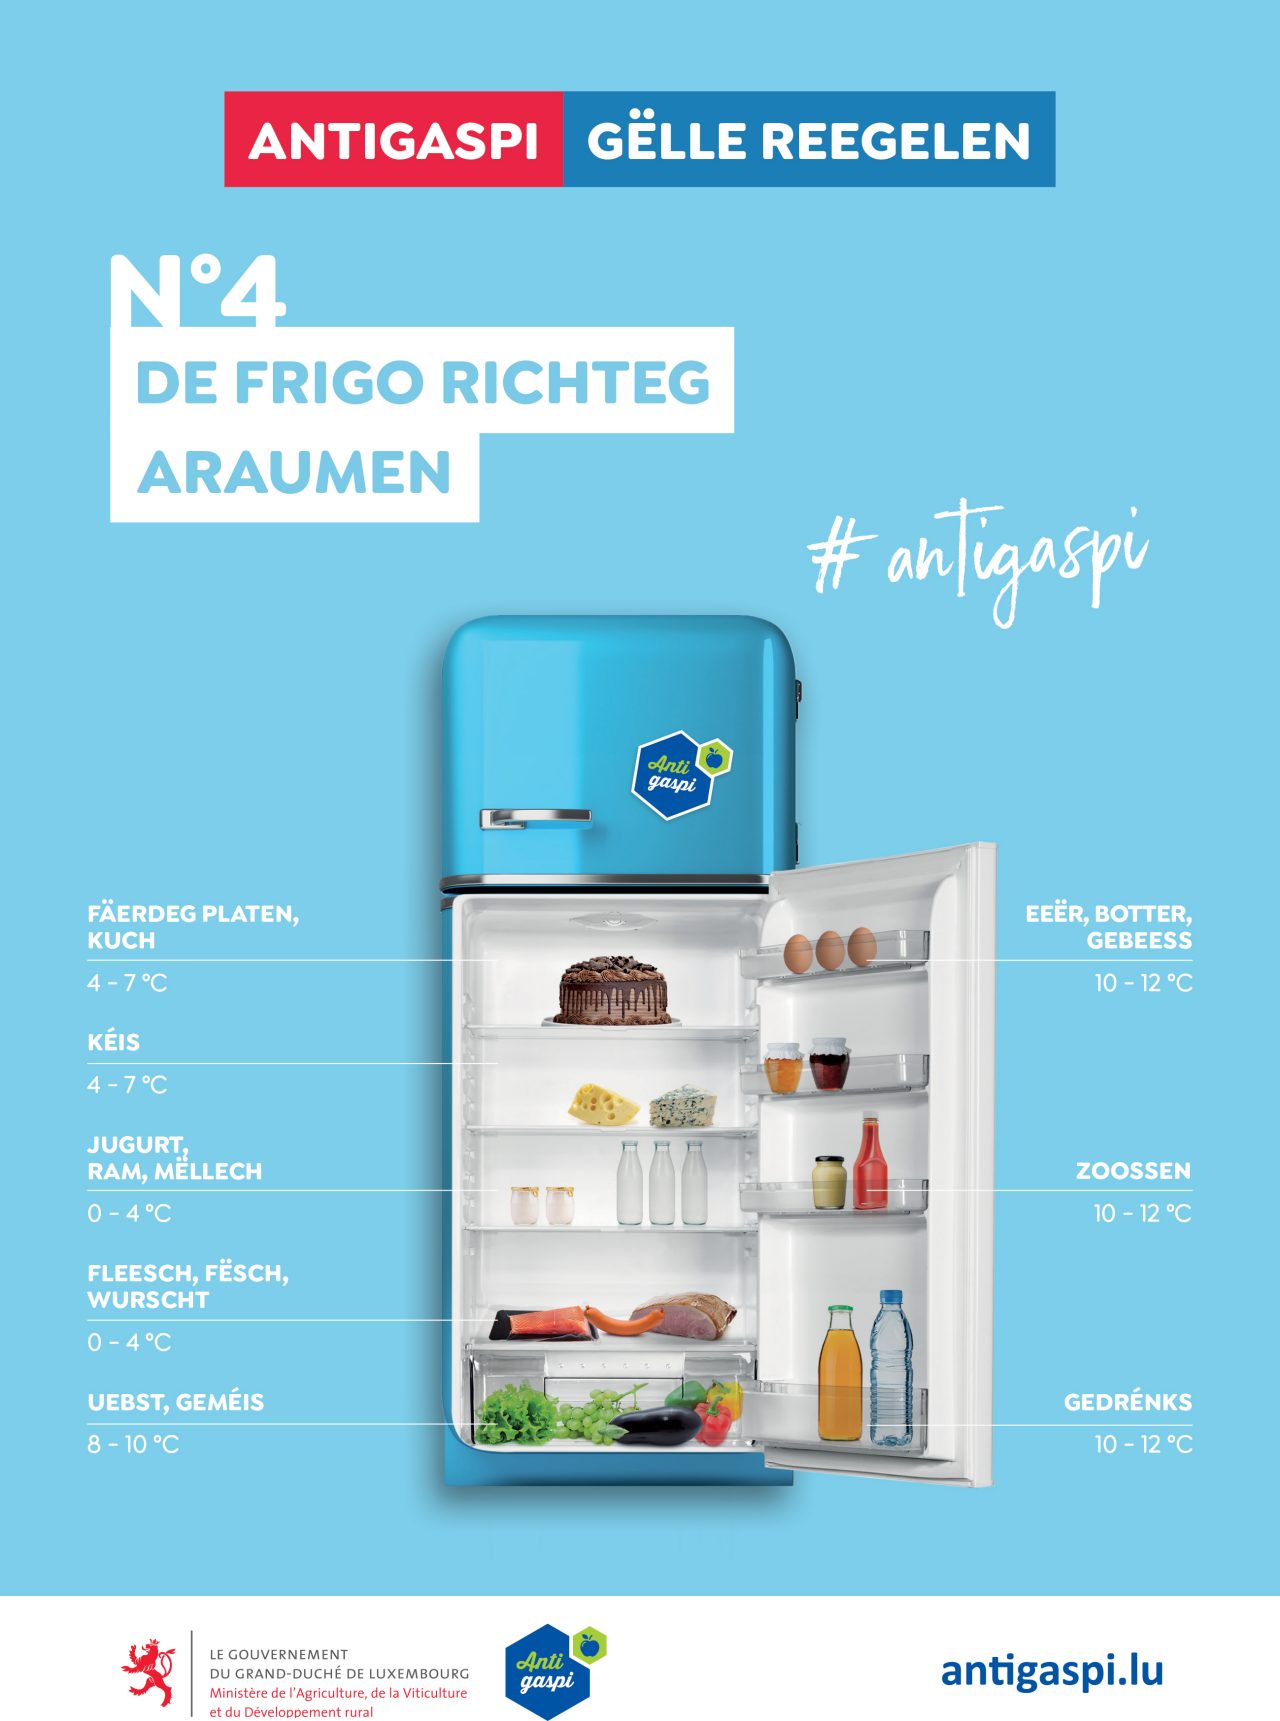 La règle d’Or „Ranger le frigo correctement“ est illustrée par un frigo ouvert, rempli d’aliments rangés dans les bonnes zones de température.